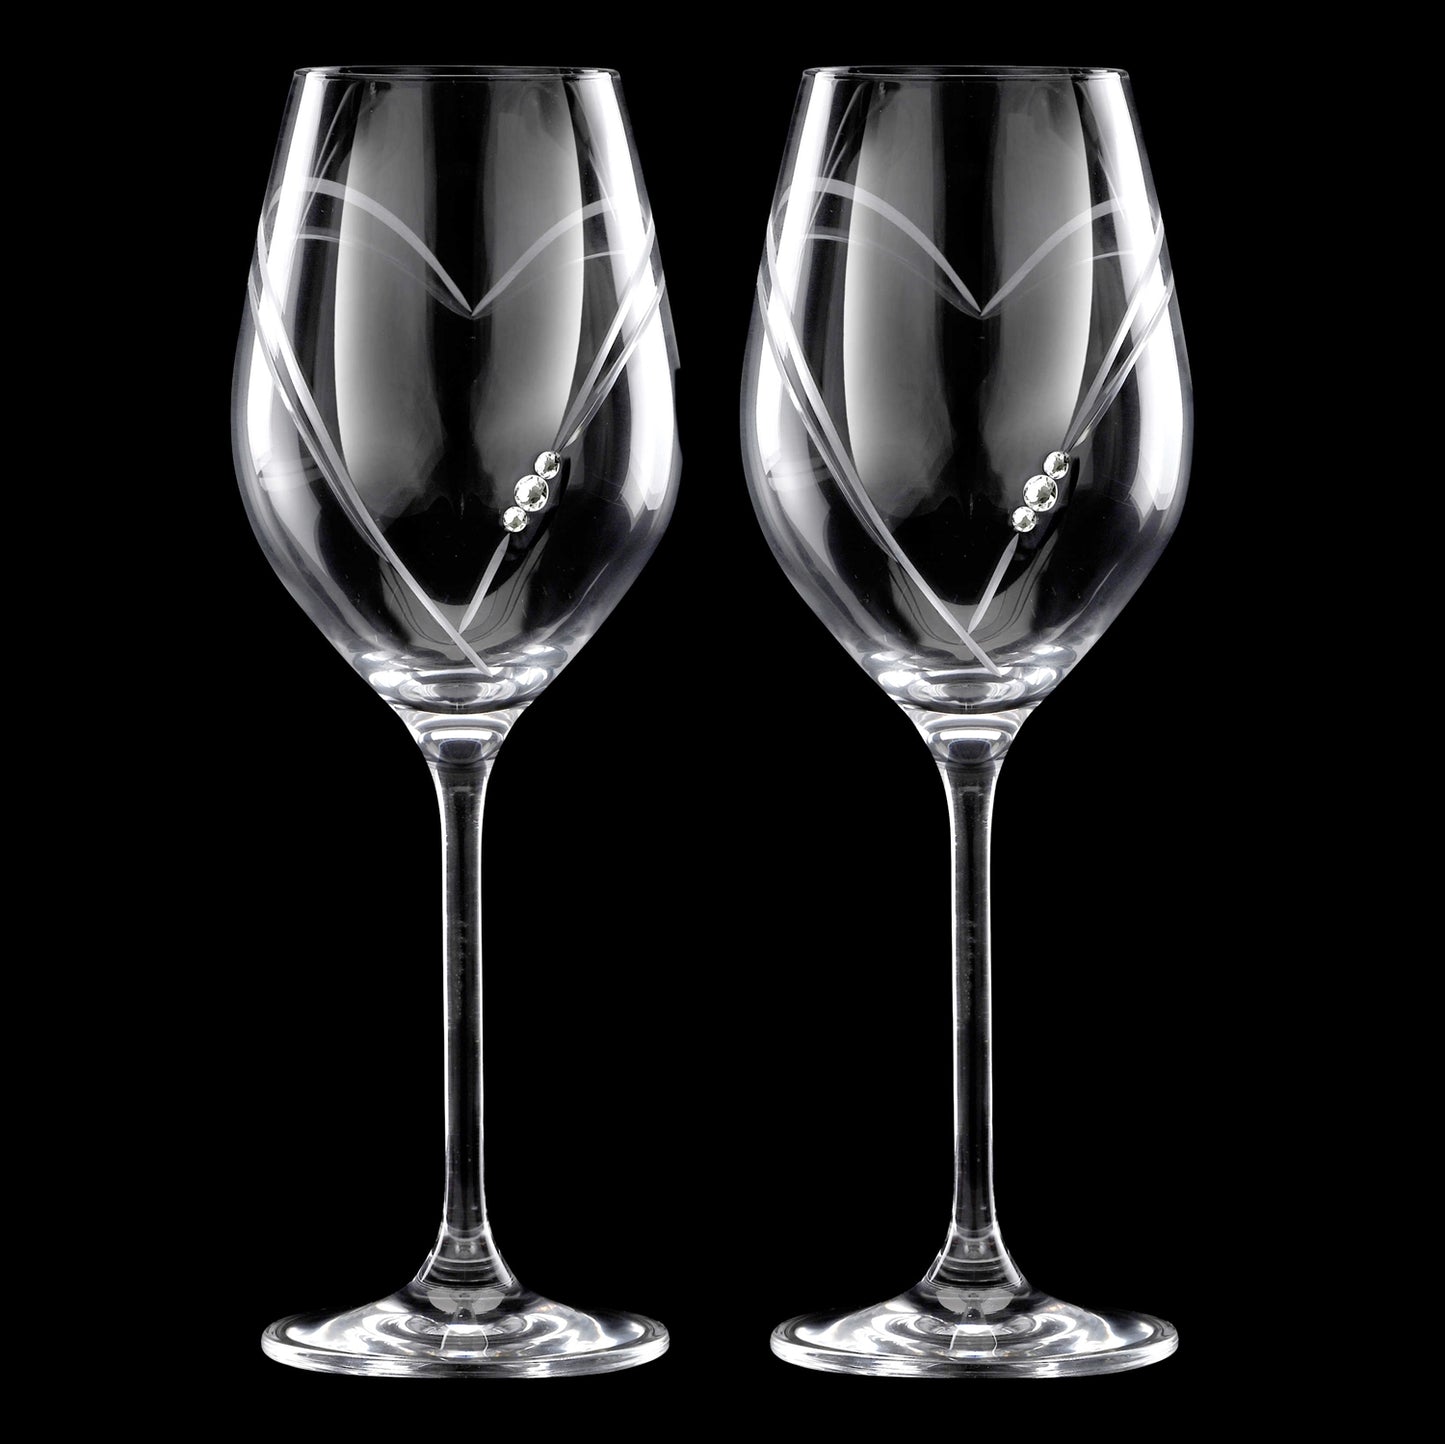 Matrivo Hvidvinsglas med Swarovski krystaller - 2 stk. Two Hearts